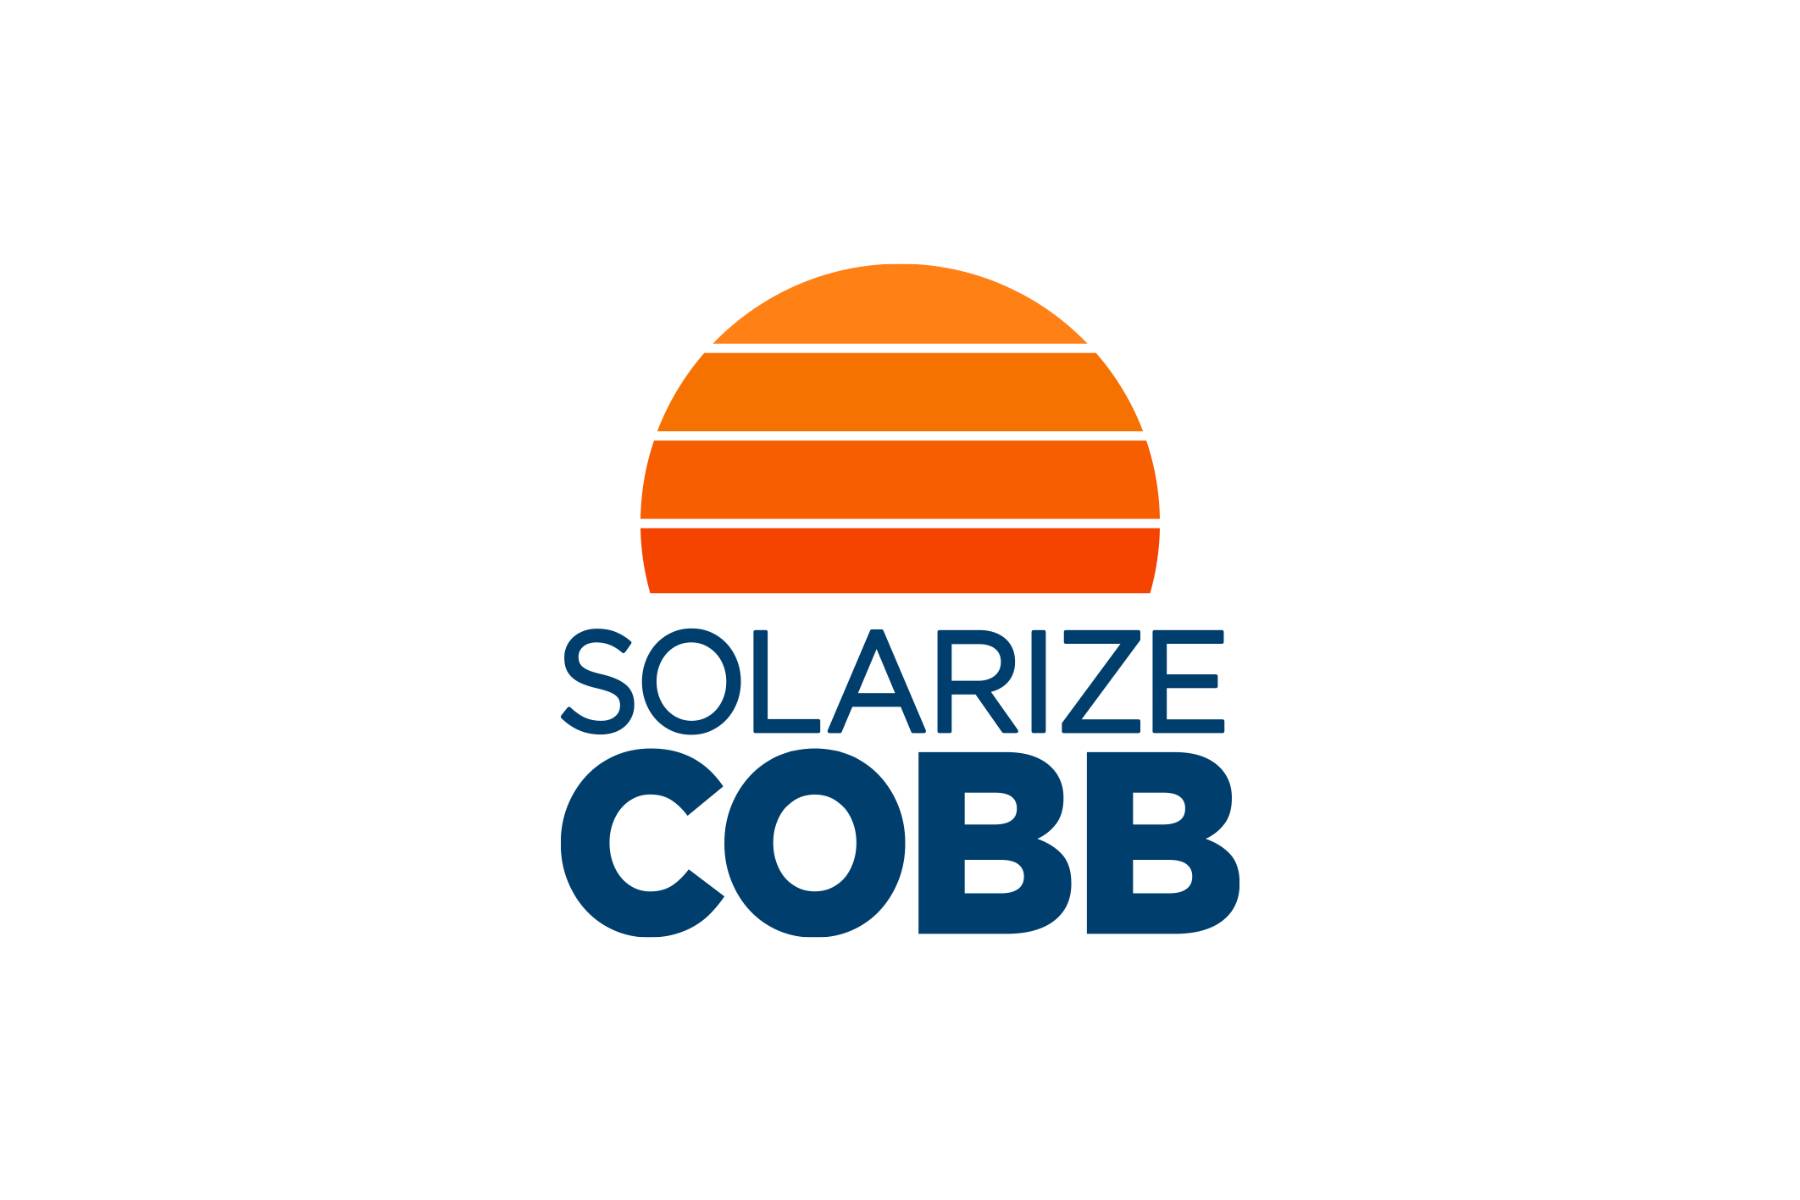 Solarize Cobb Press Release